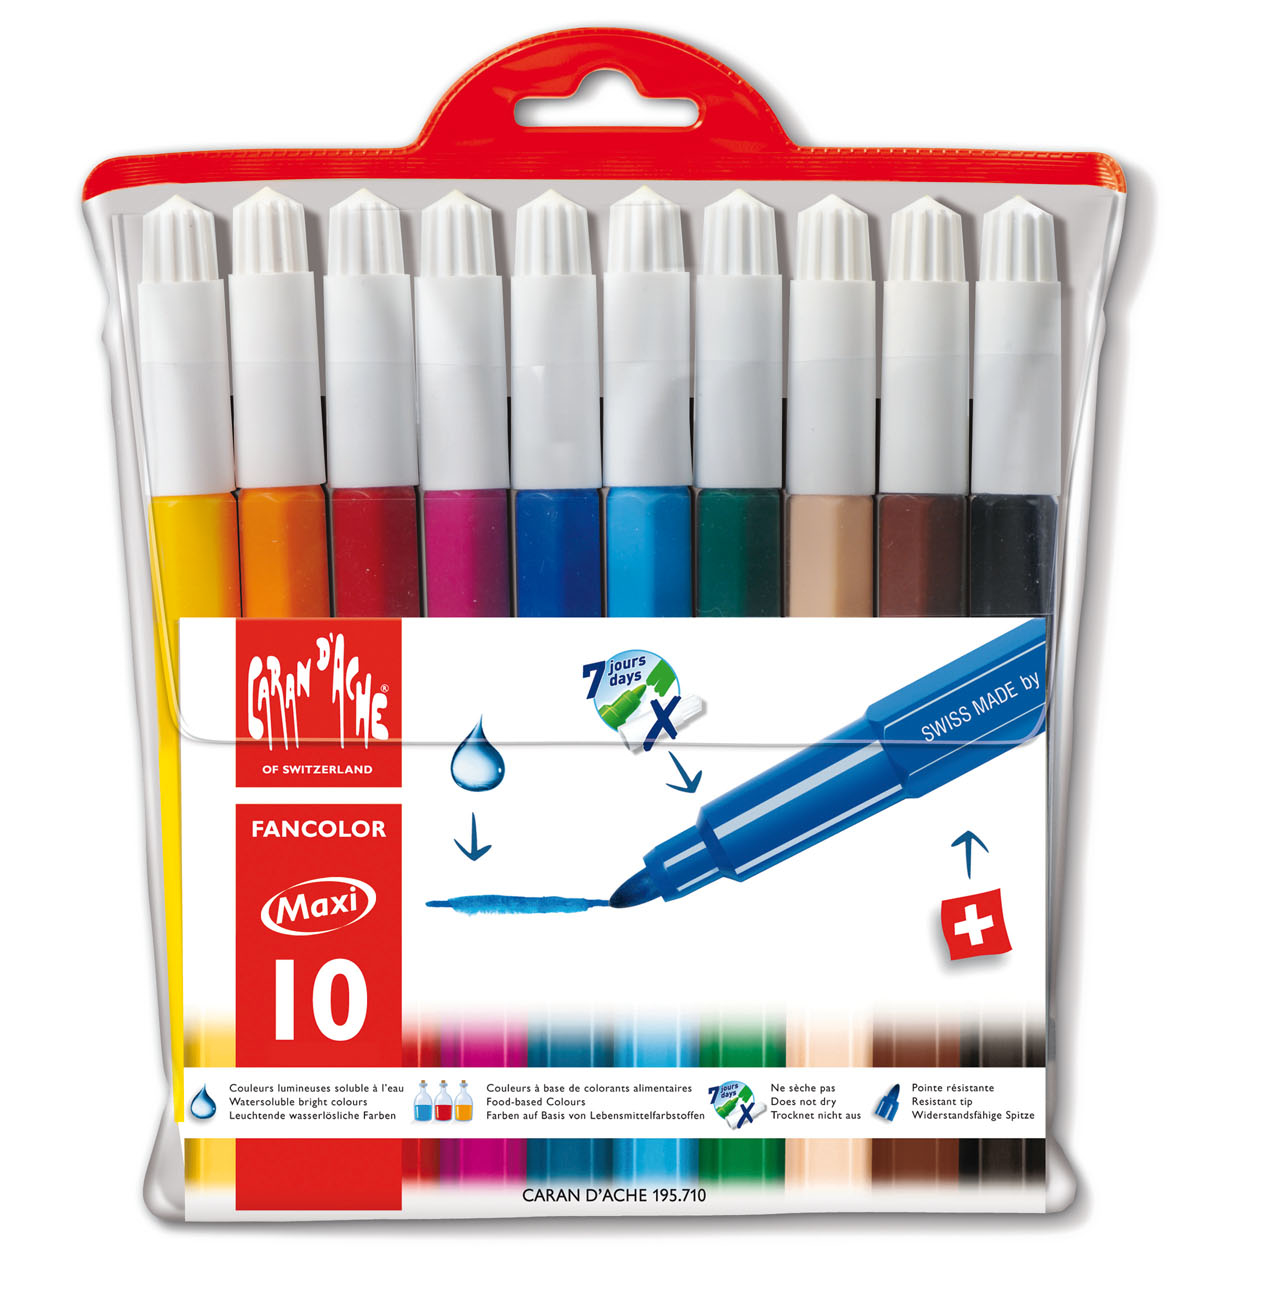 CARAN D'ACHE Fancolor Maxi XB 195.710 10 couleurs, étui 10 couleurs, étui